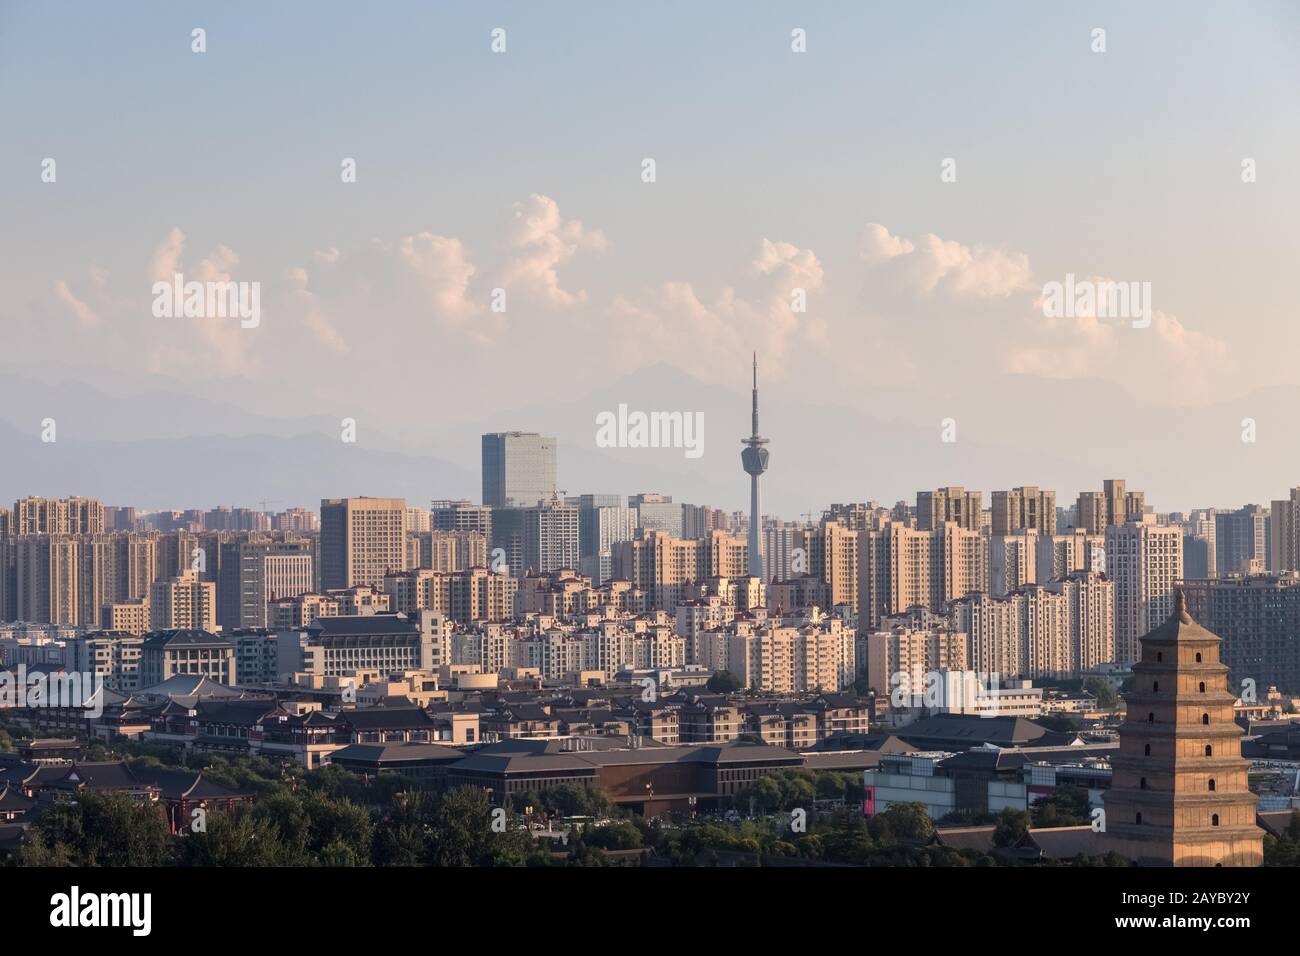 xian cityscape at dusk Stock Photo